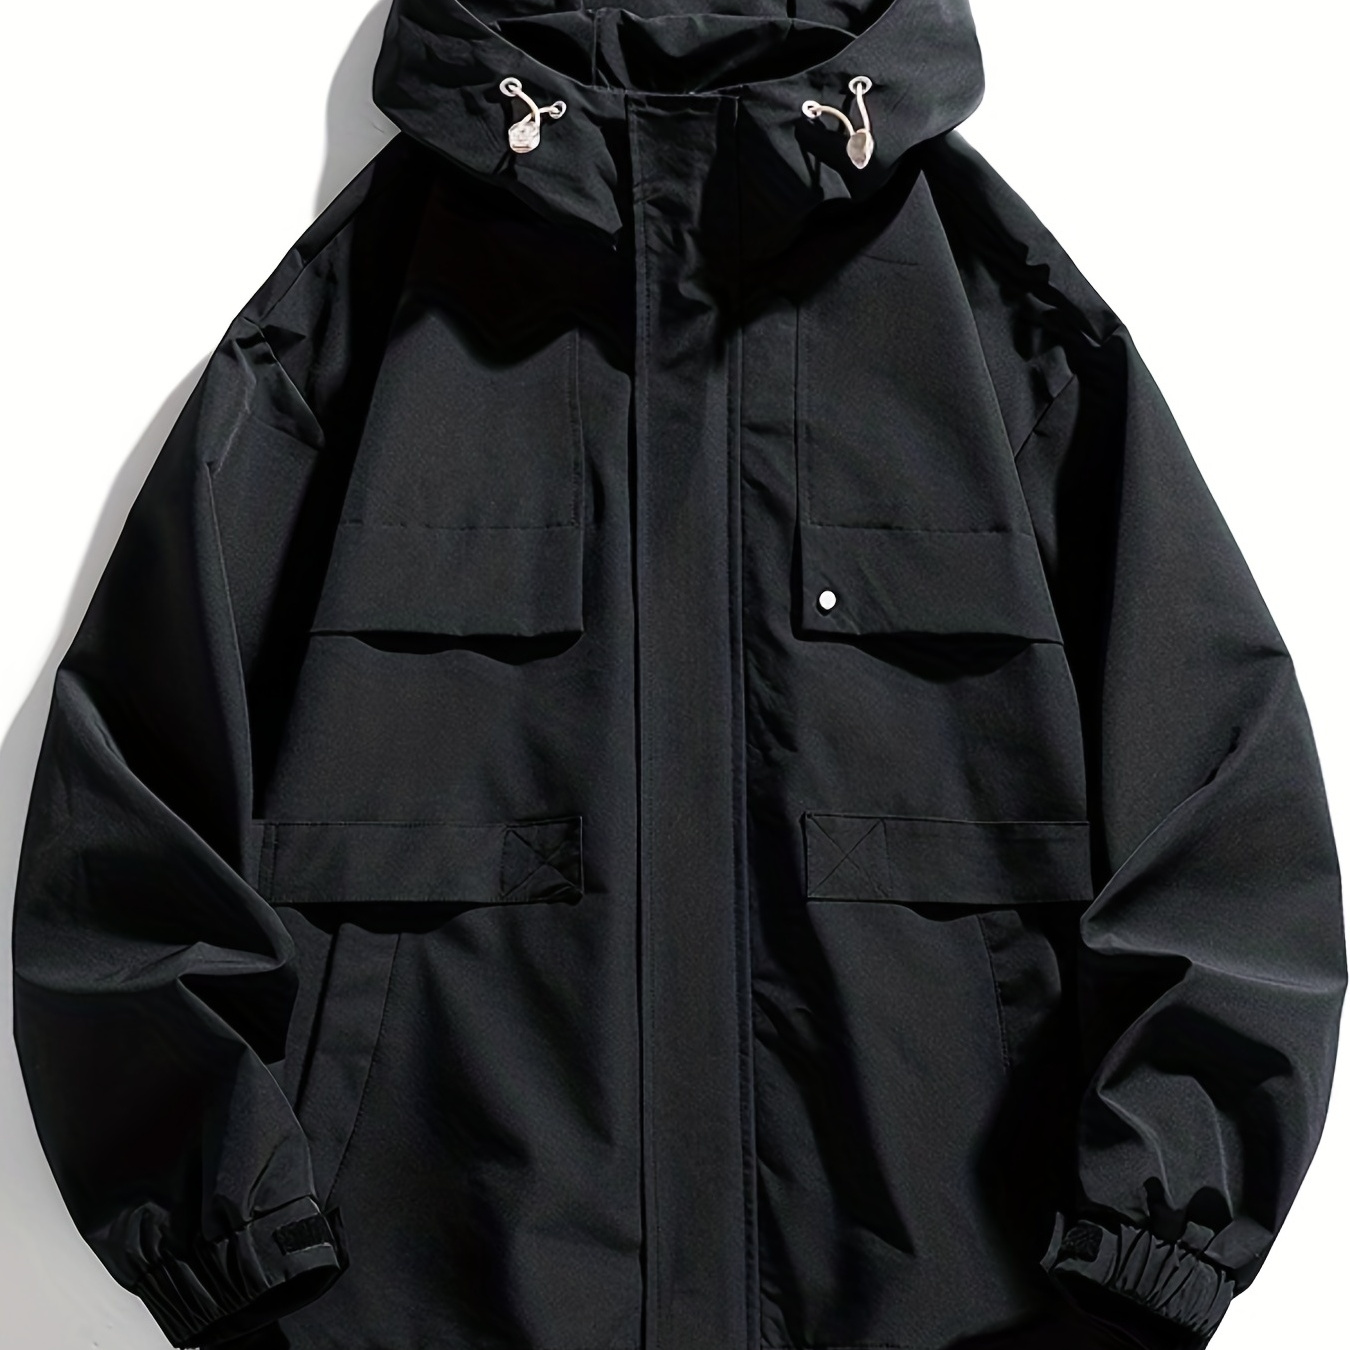 

Windbreaker Hooded Jacket, Men's Casual Zip Up Jacket Coat For Outdoor Activities